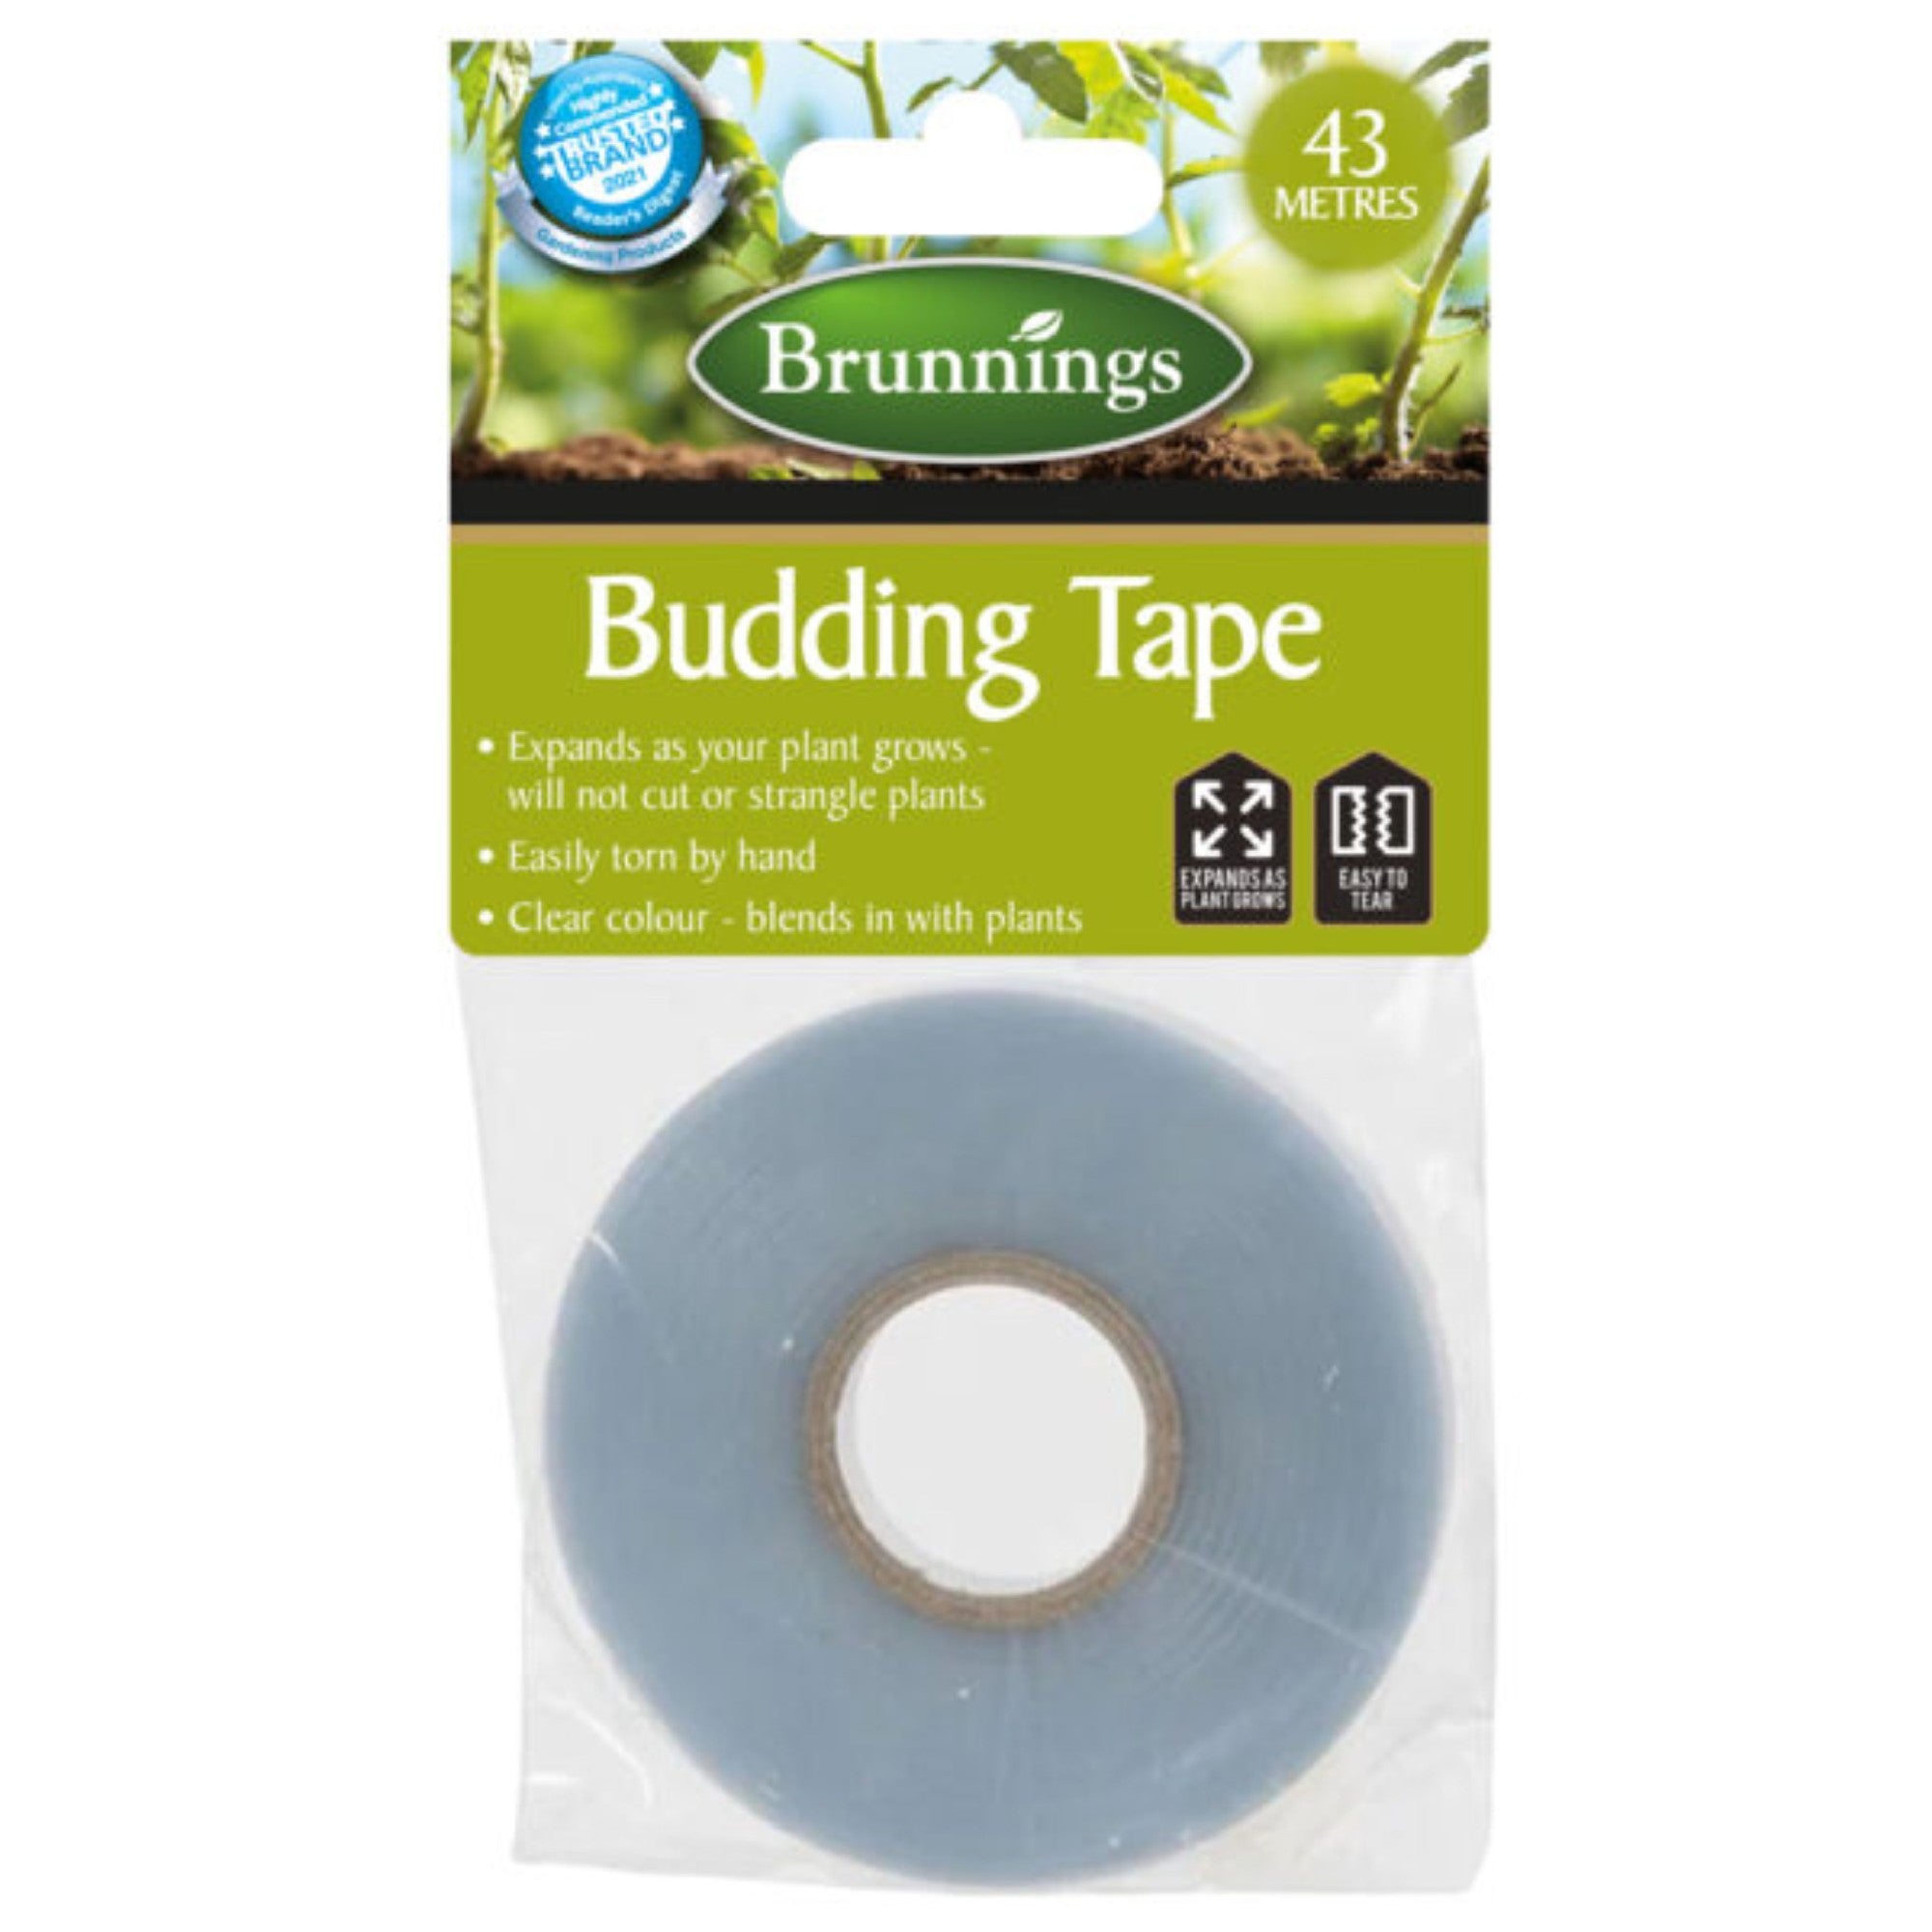 Budding Tape